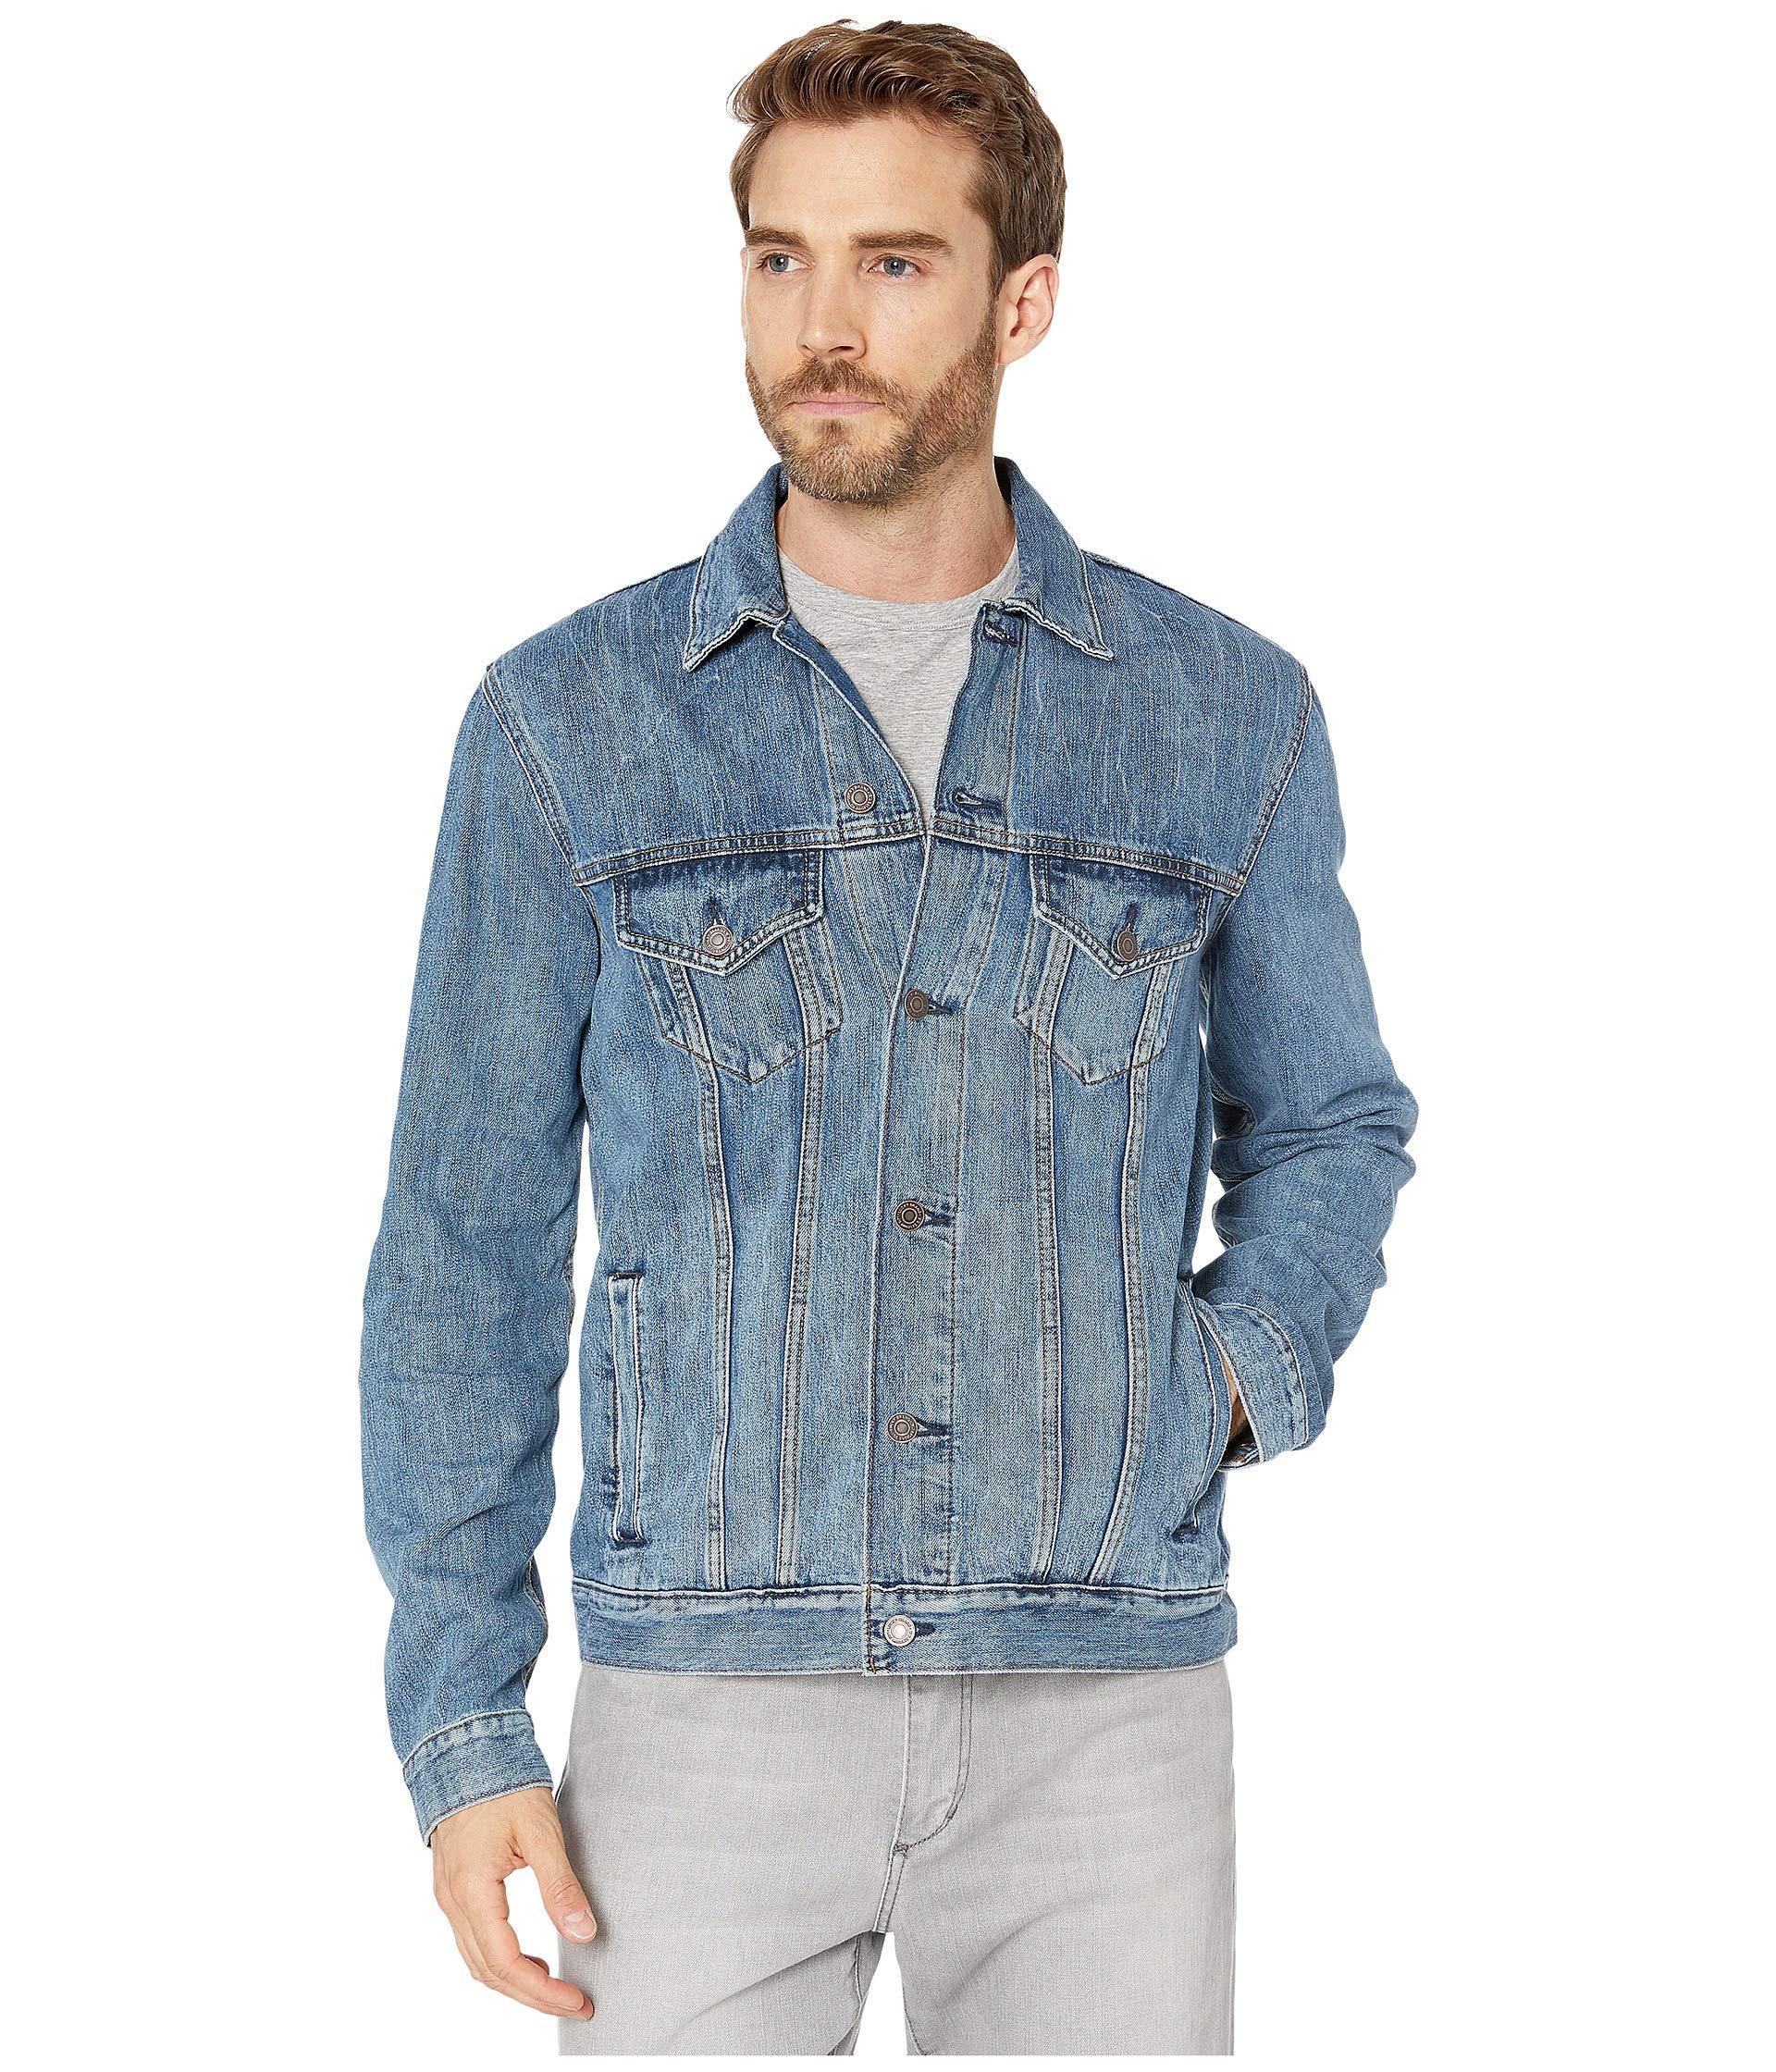 Lucky Brand Denim Medium Blue Trucker Jacket for Men - Lyst